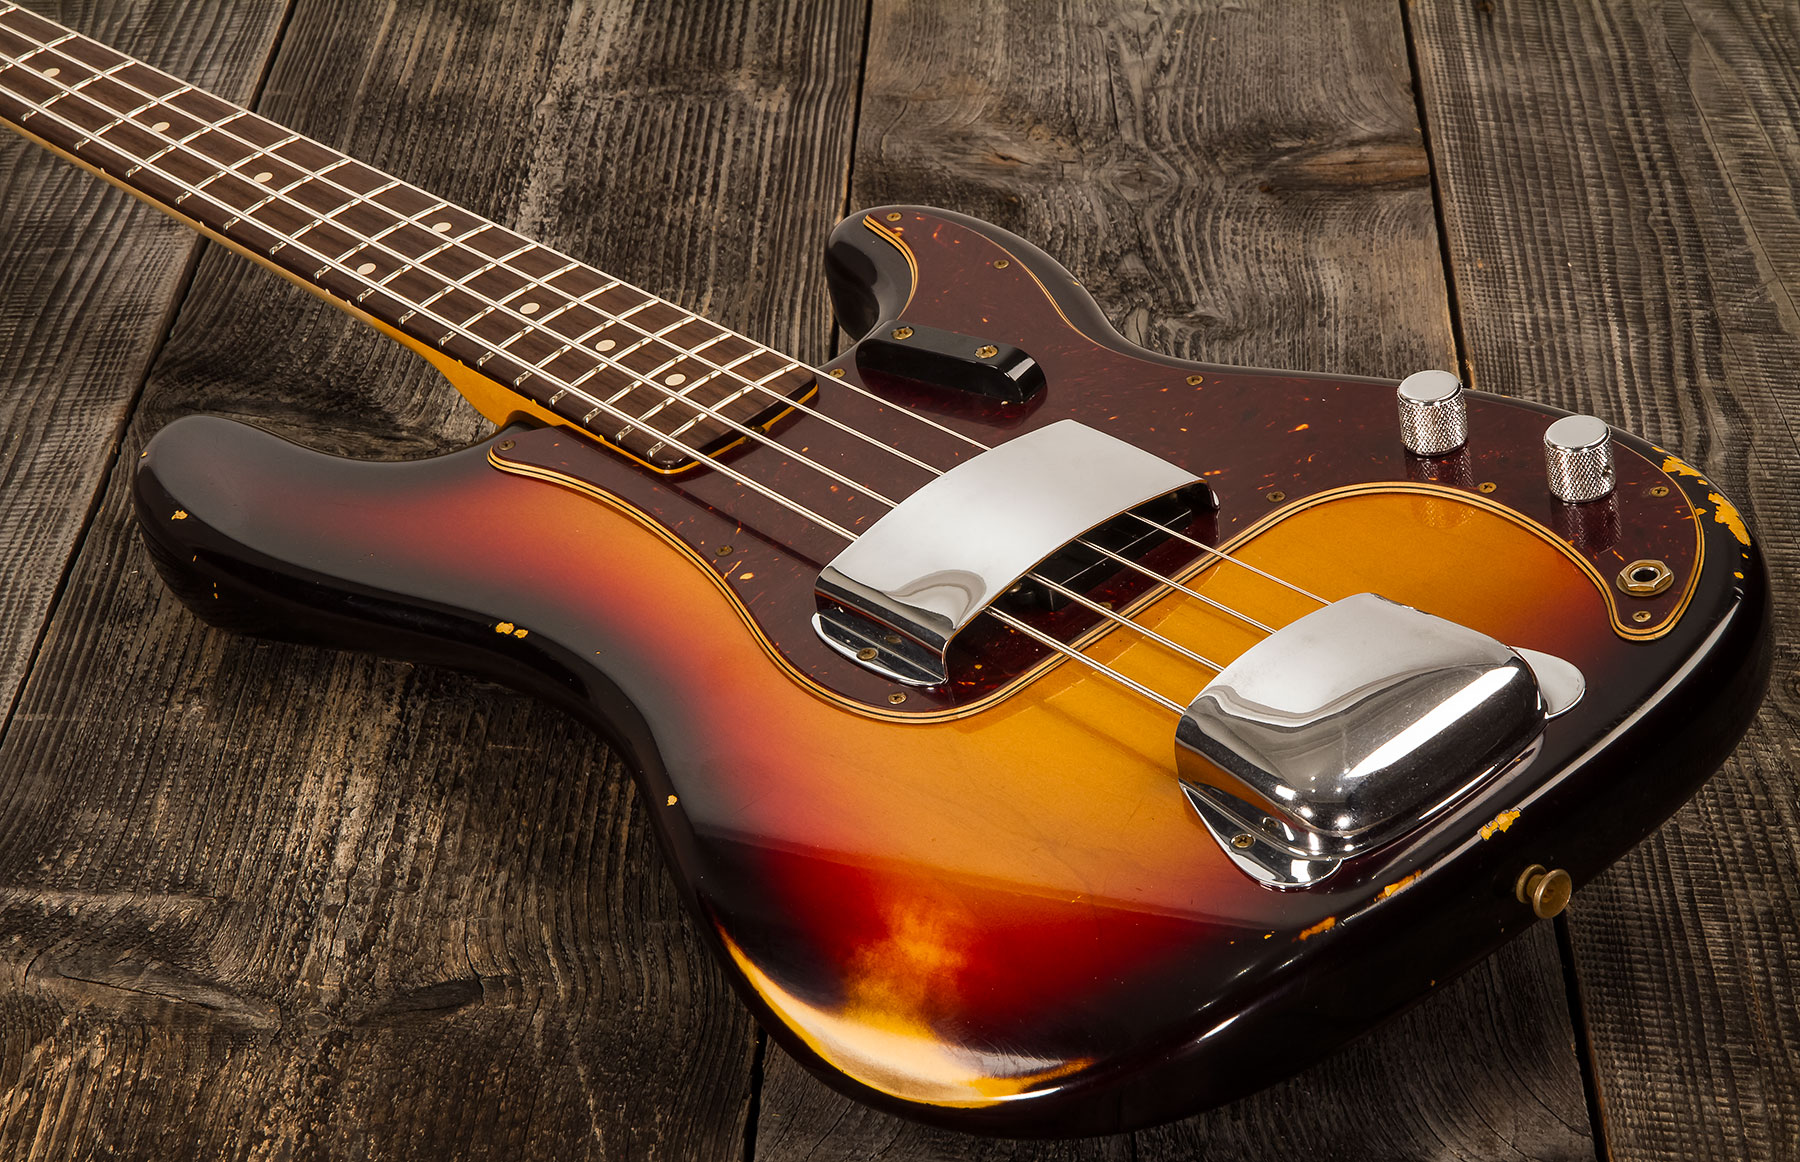 Fender Custom Shop Precision Bass 1961 Rw #cz556533 - Relic 3-color Sunburst - Solidbody E-bass - Variation 2